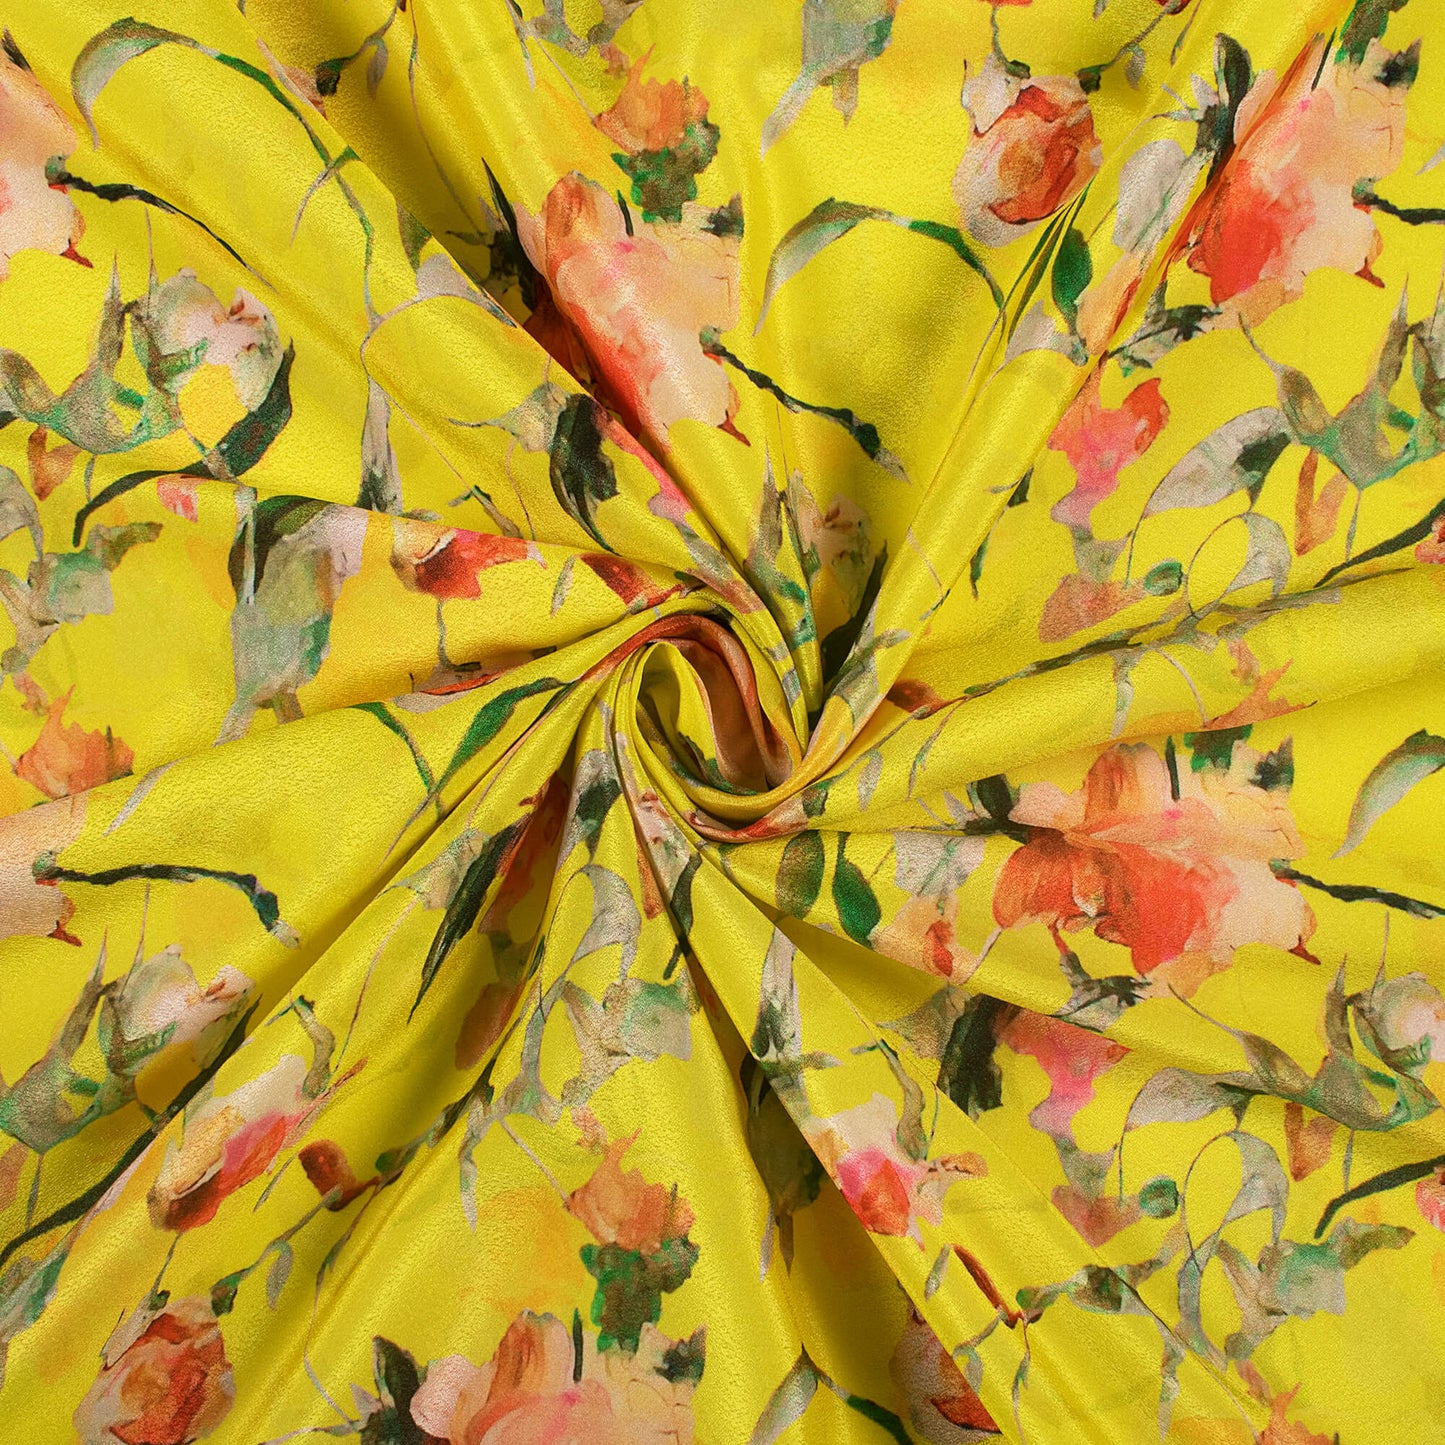 Botenical Floral Digital Print Crepe Silk Fabric